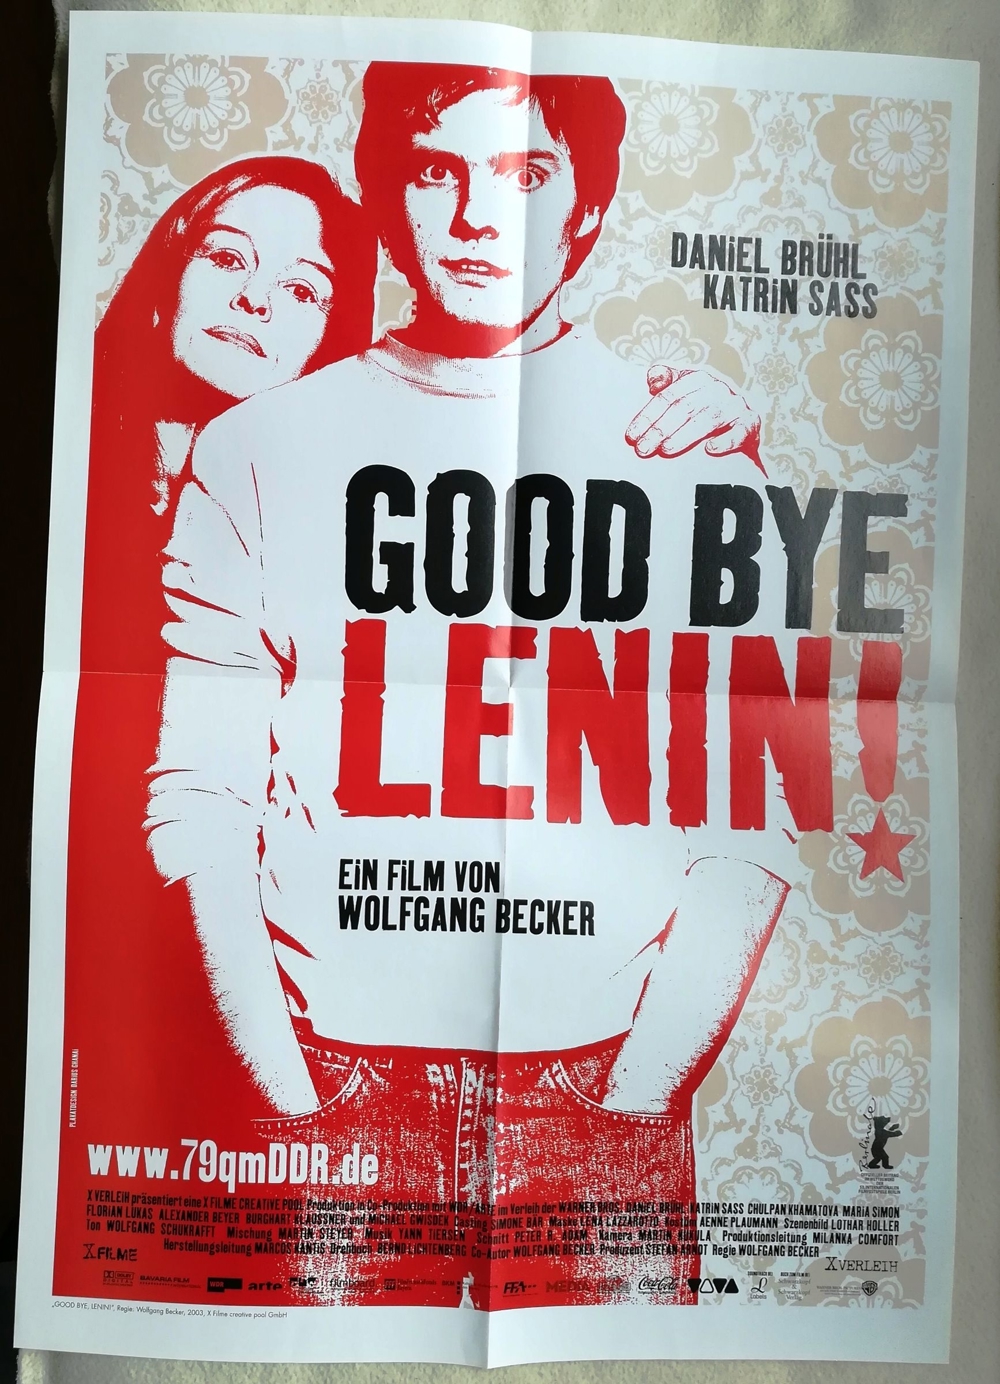 Filmplakat "Good bye Lenin"